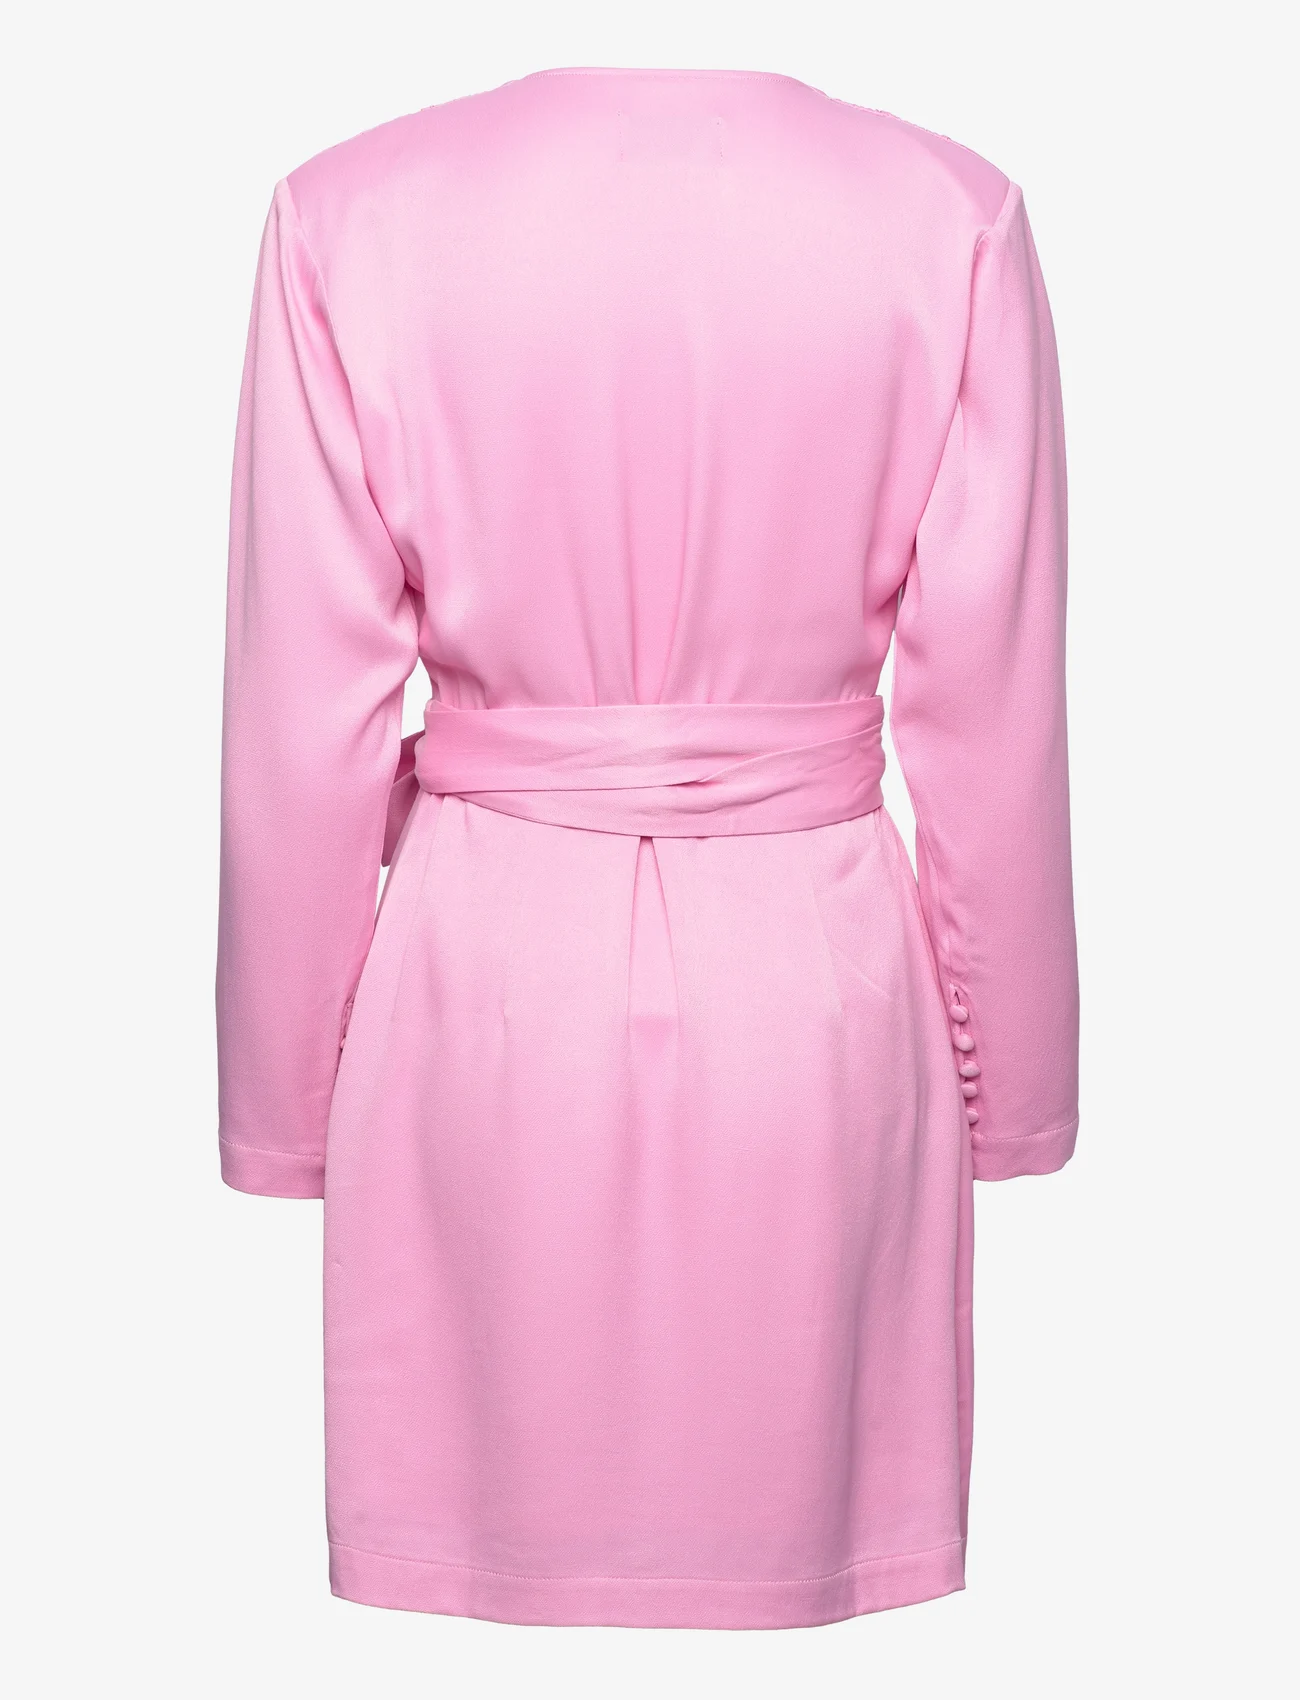 MAUD - Sanna Dress - odzież imprezowa w cenach outletowych - pink - 1